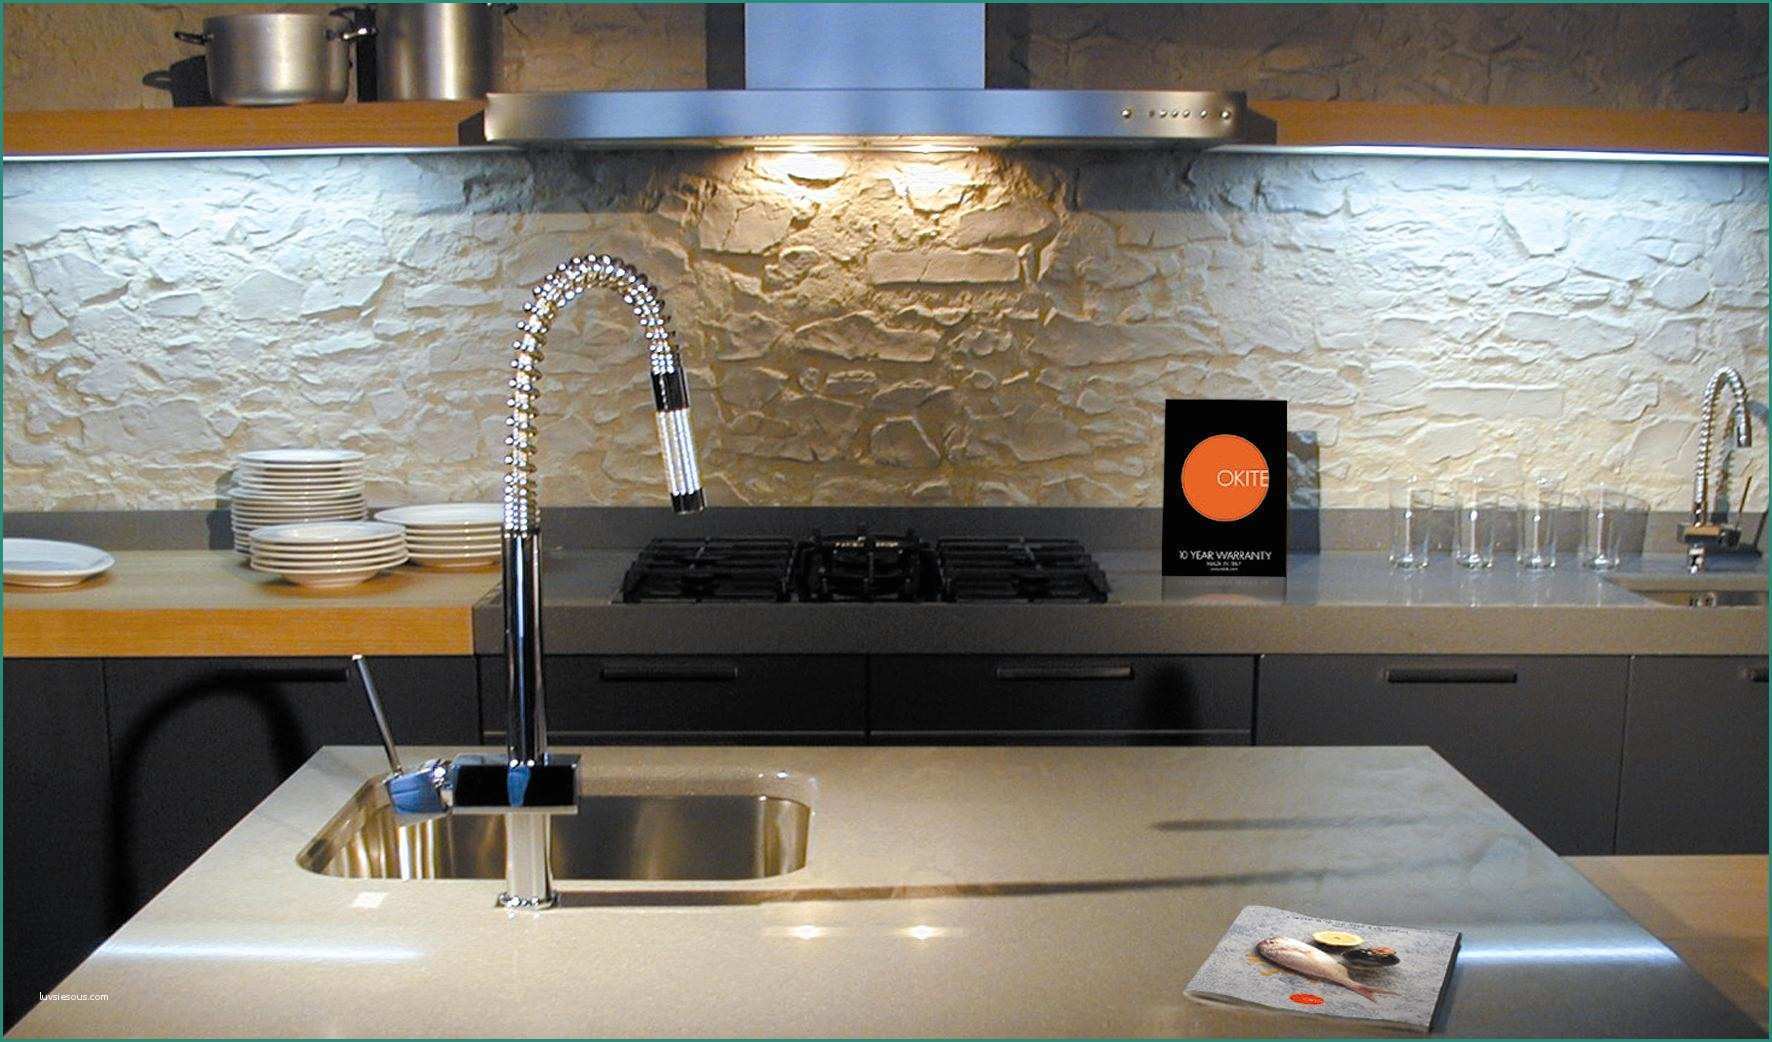 Piano Cucina Okite Prezzi E Piani Da Cucina In Okite Home Design Ideas Home Design